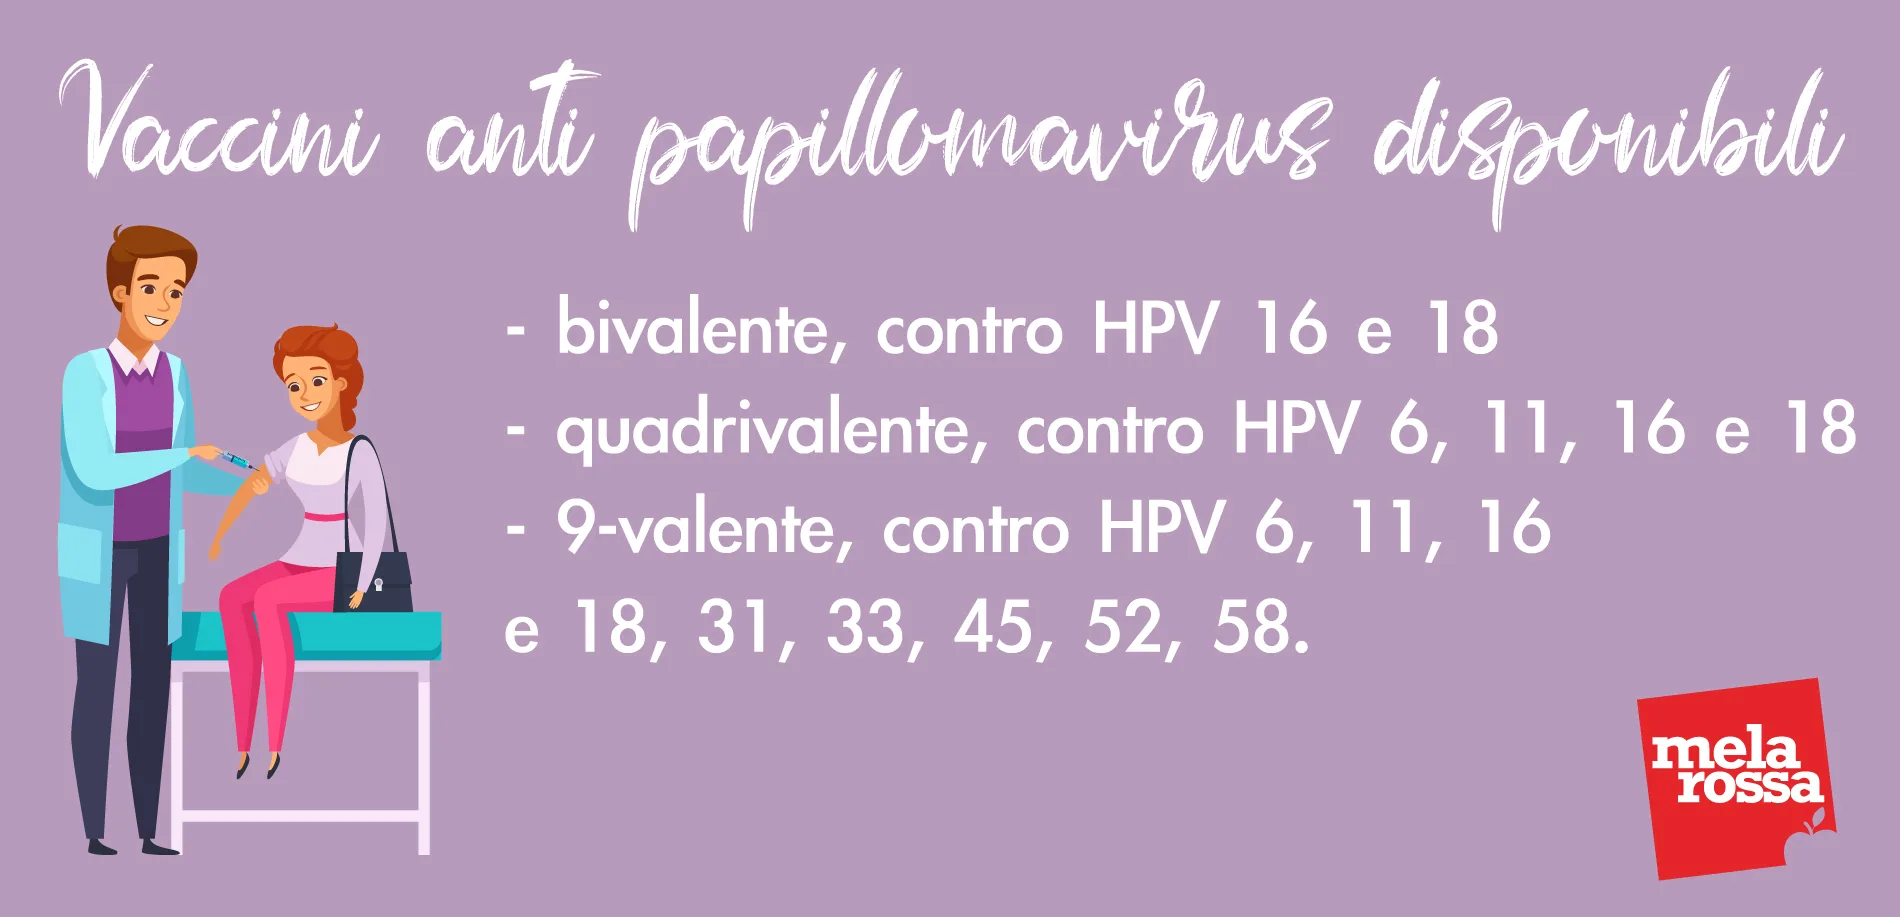 papilloma virus ceppo 16)